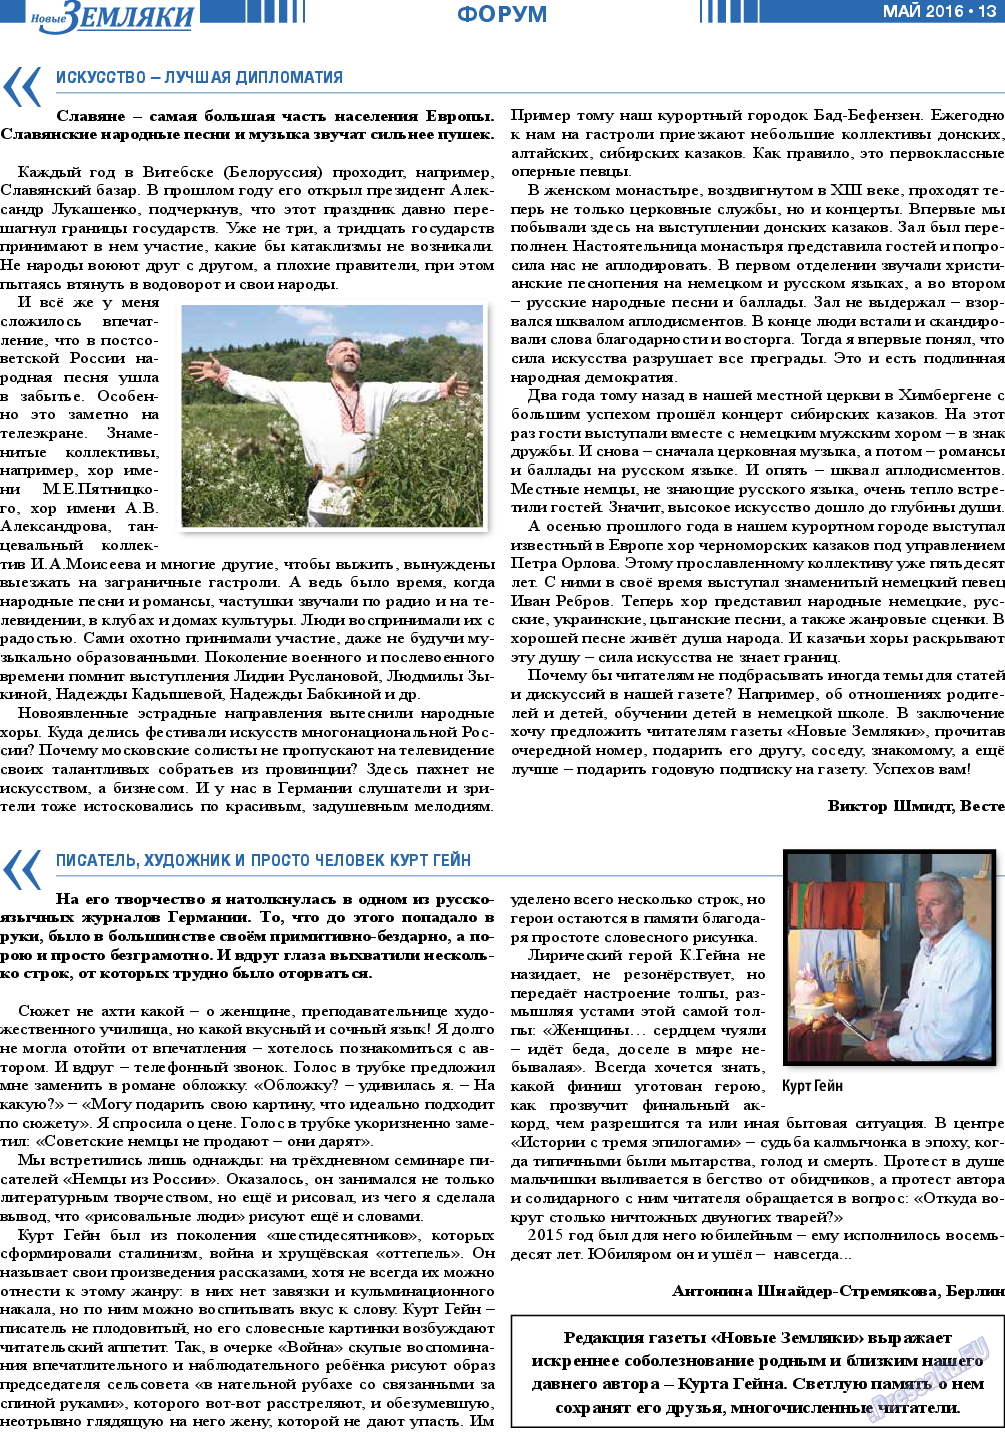 Новые Земляки, газета. 2016 №5 стр.13